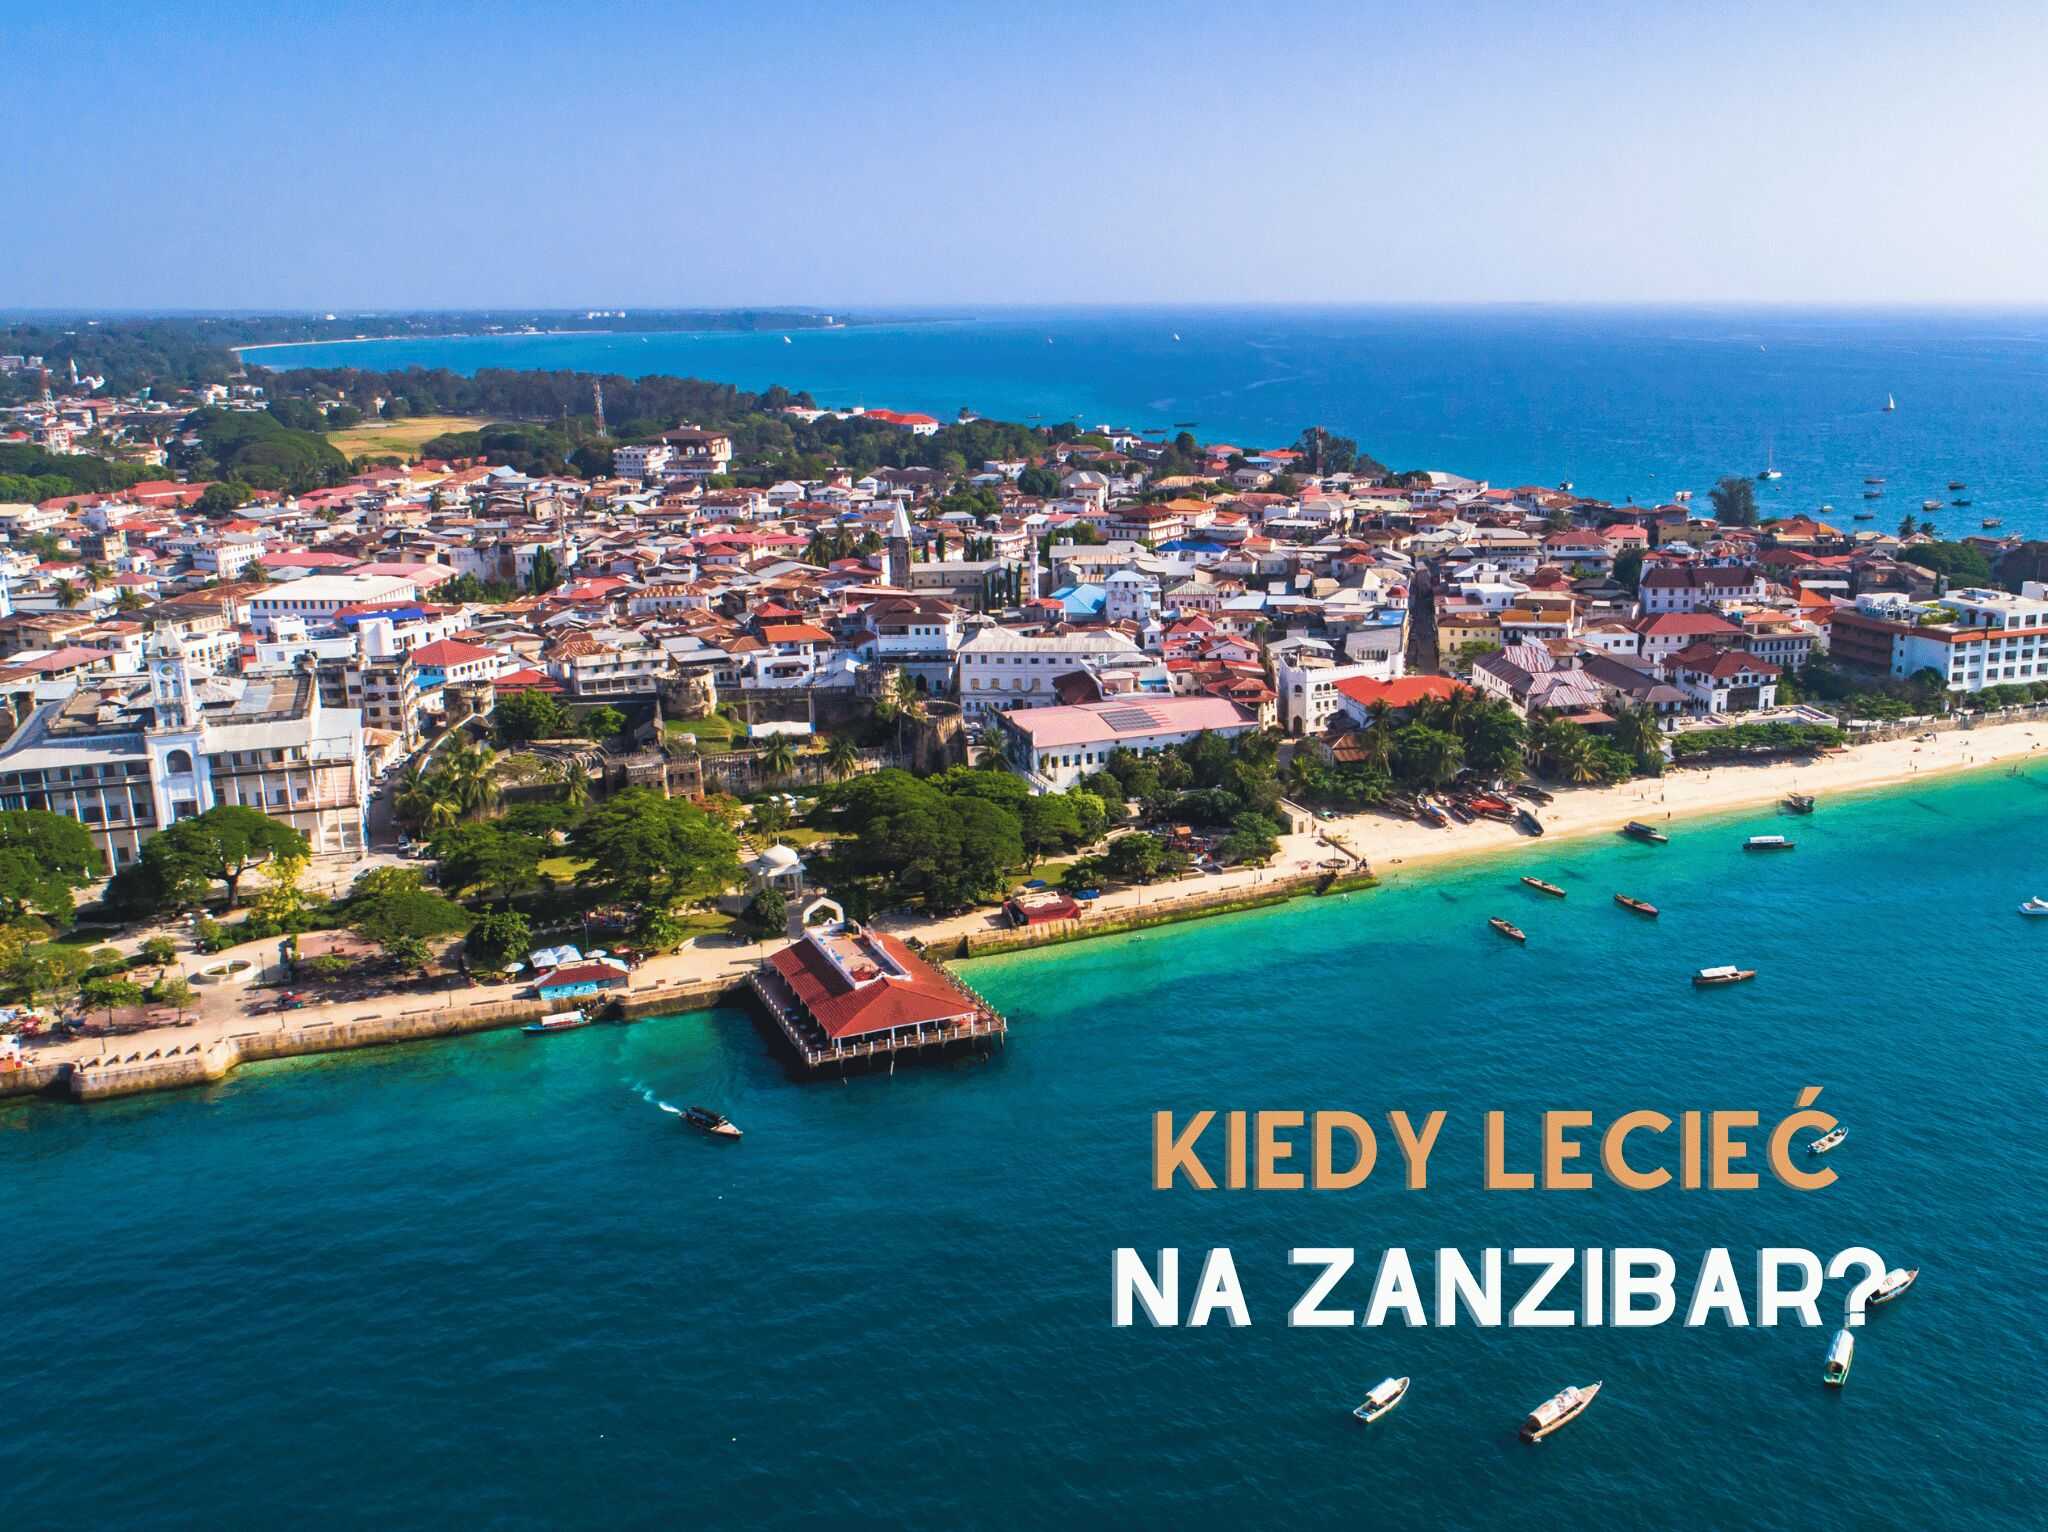 Kiedy lecieć na Zanzibar? - blog 4challenge